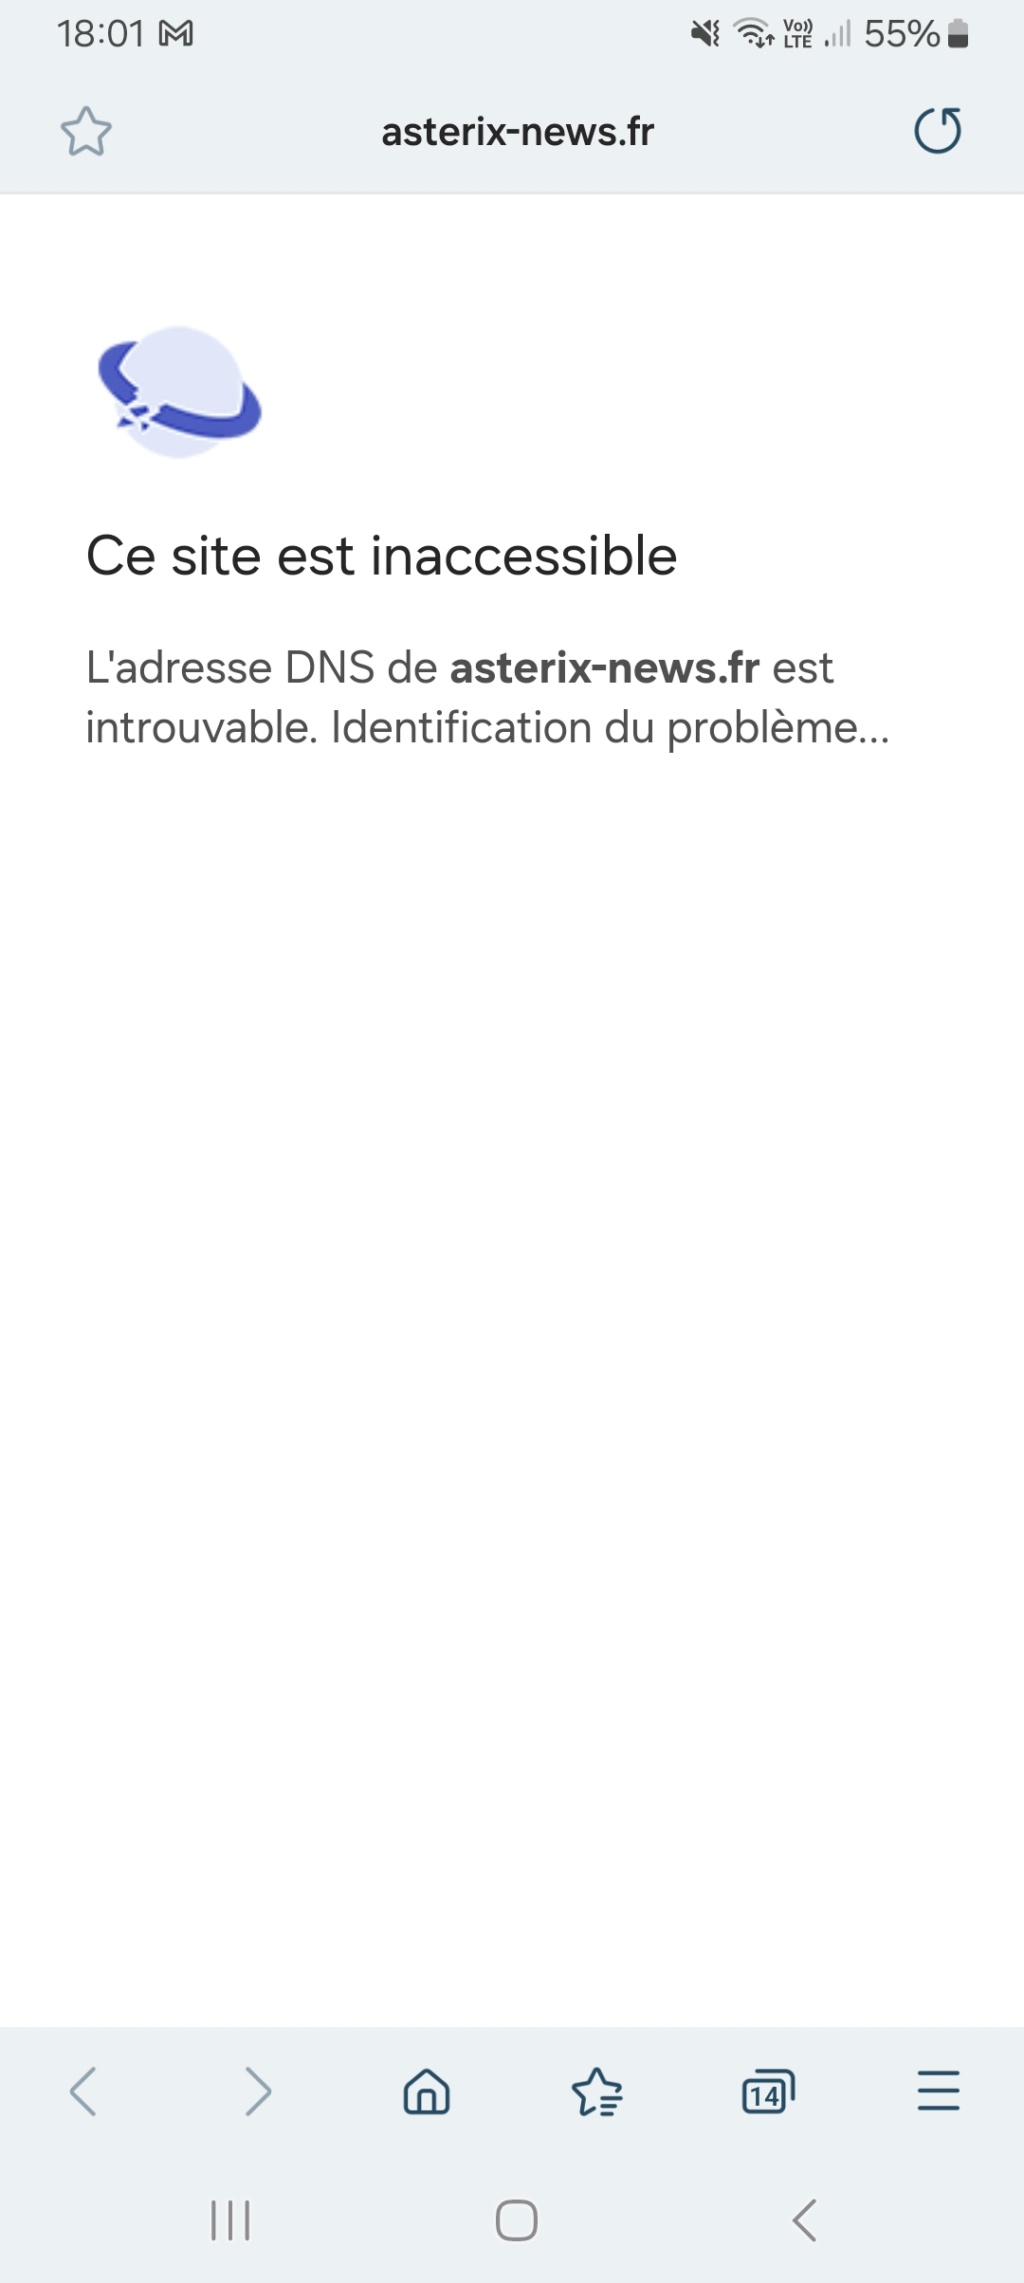 www.asterix-news.fr - Site non-officiel qui regroupera toutes les nouveautés sur Astérix Screen10